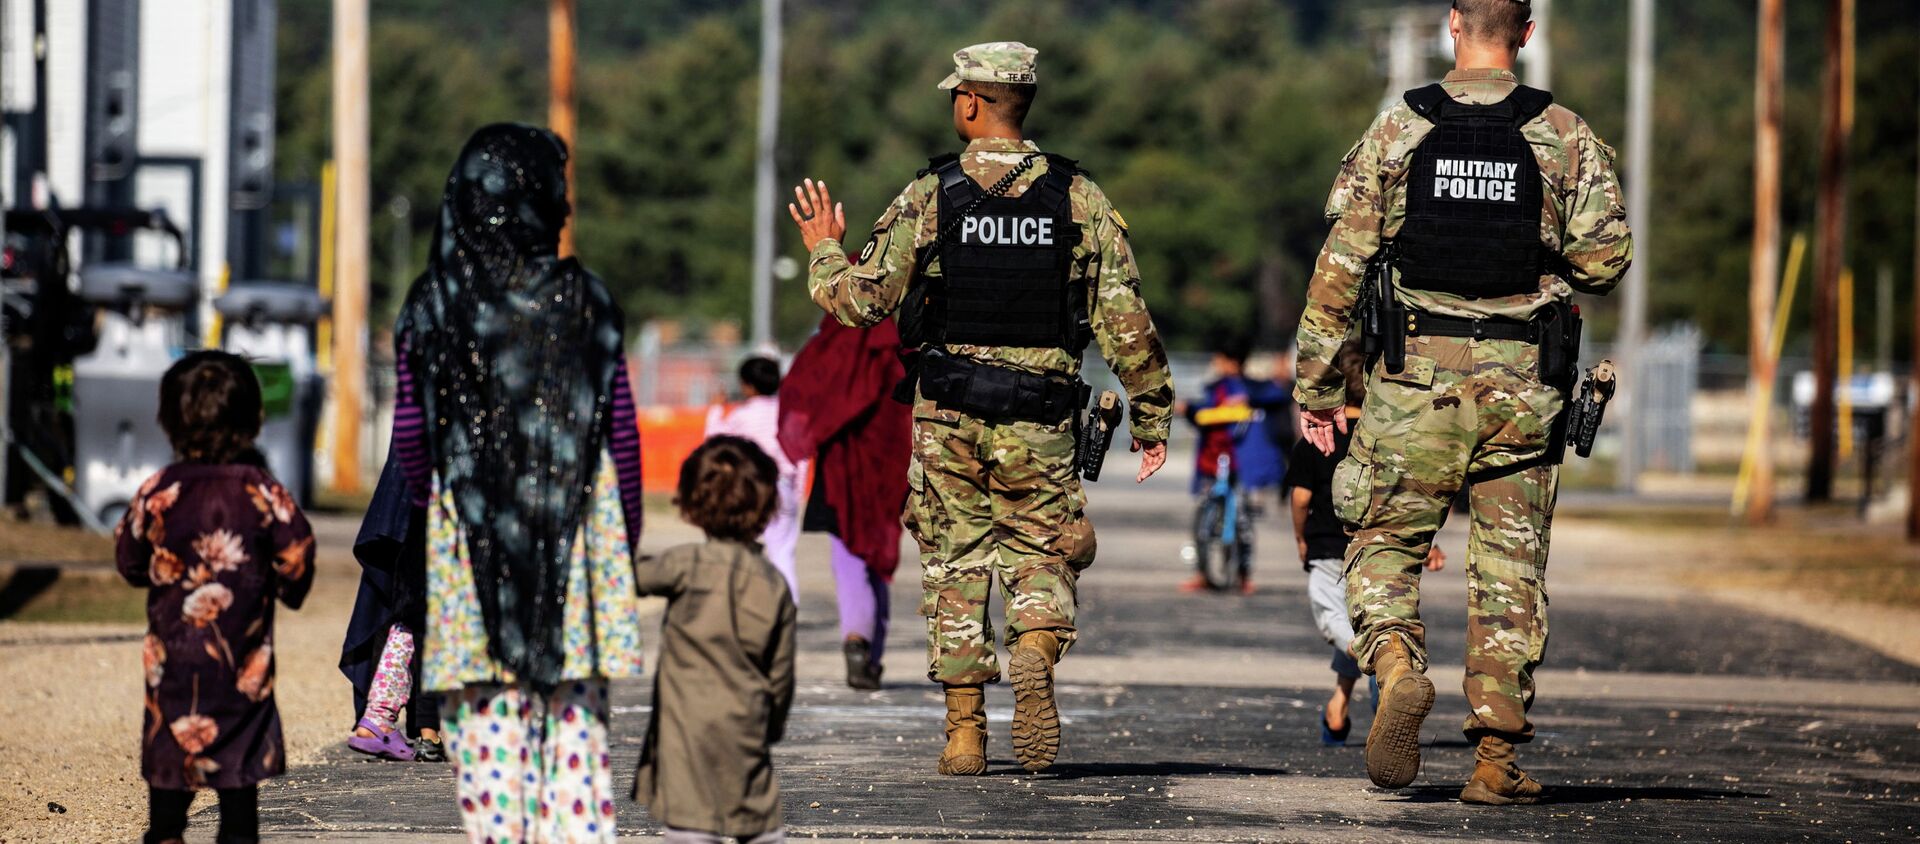 Военная полиция США проходит мимо афганских беженцев на базе армии США в Висконсине - Sputnik Кыргызстан, 1920, 05.10.2021